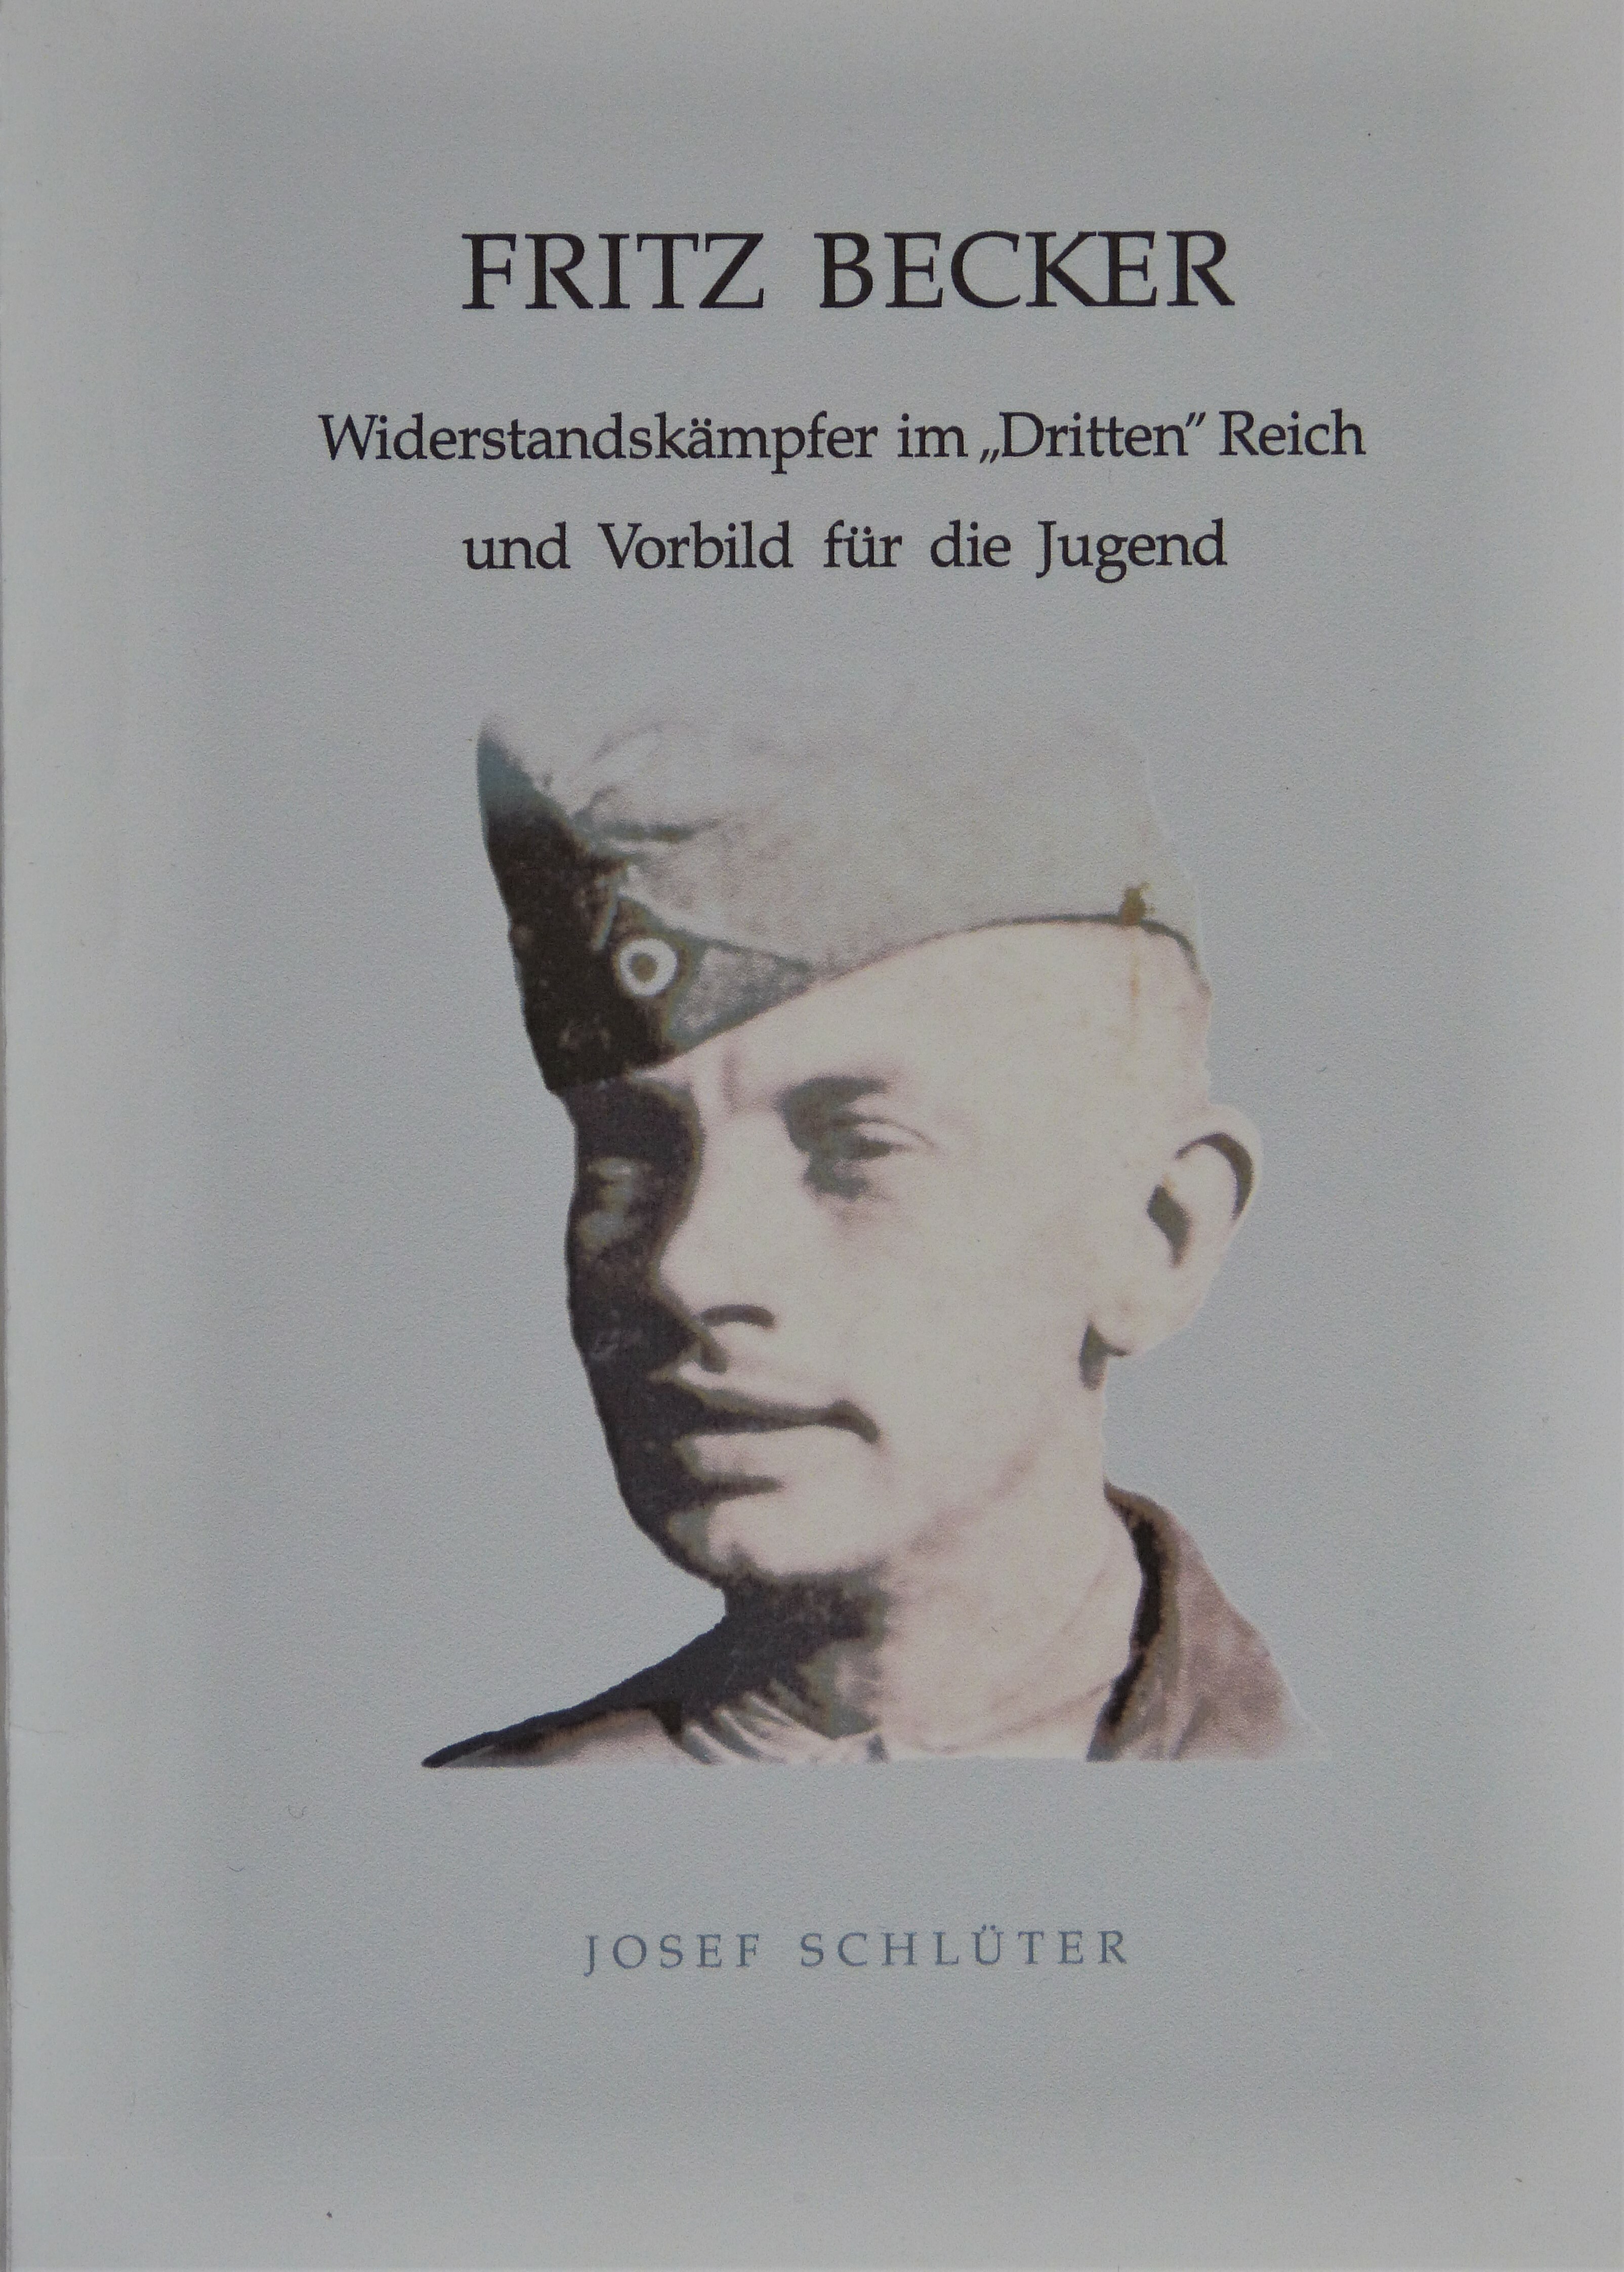 Biographie von Fritz Becker (Städt. Hellweg-Museum Geseke CC BY-NC-SA)